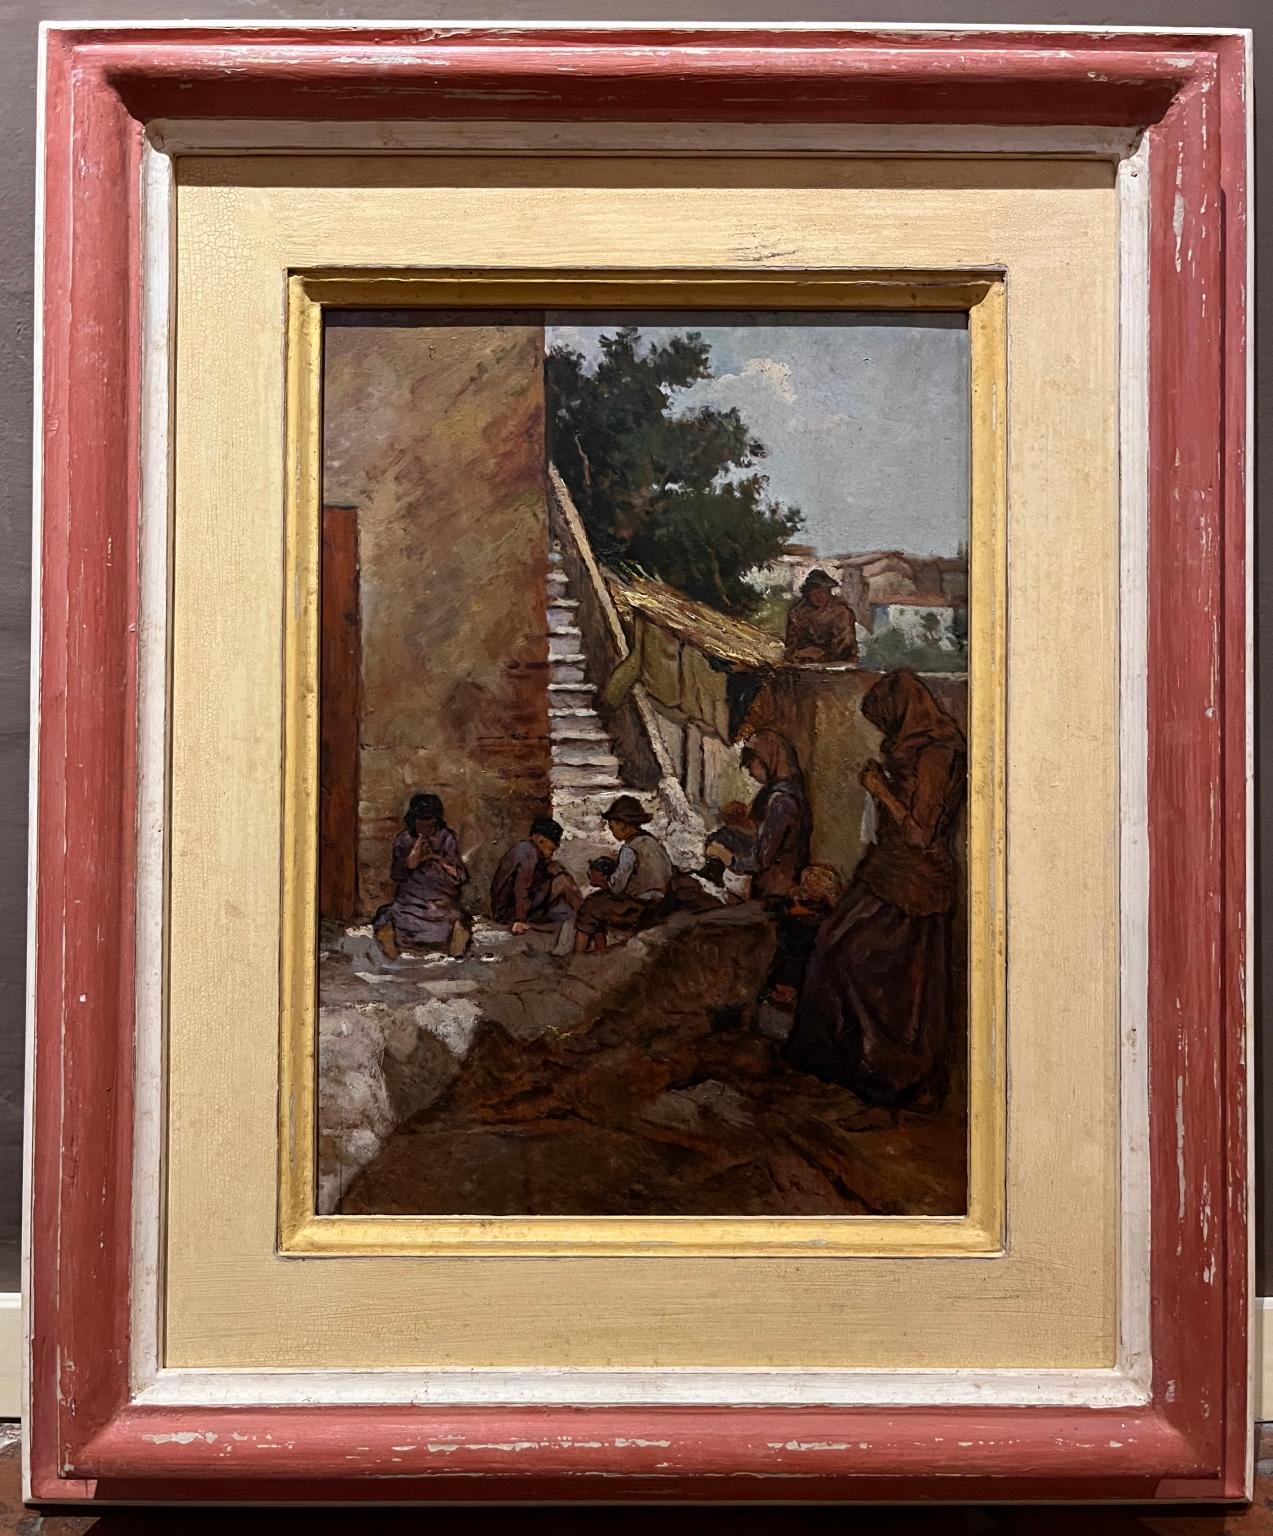 Scène de genre figurative toscane Huile sur toile du 20e siècle - Painting de Unknown